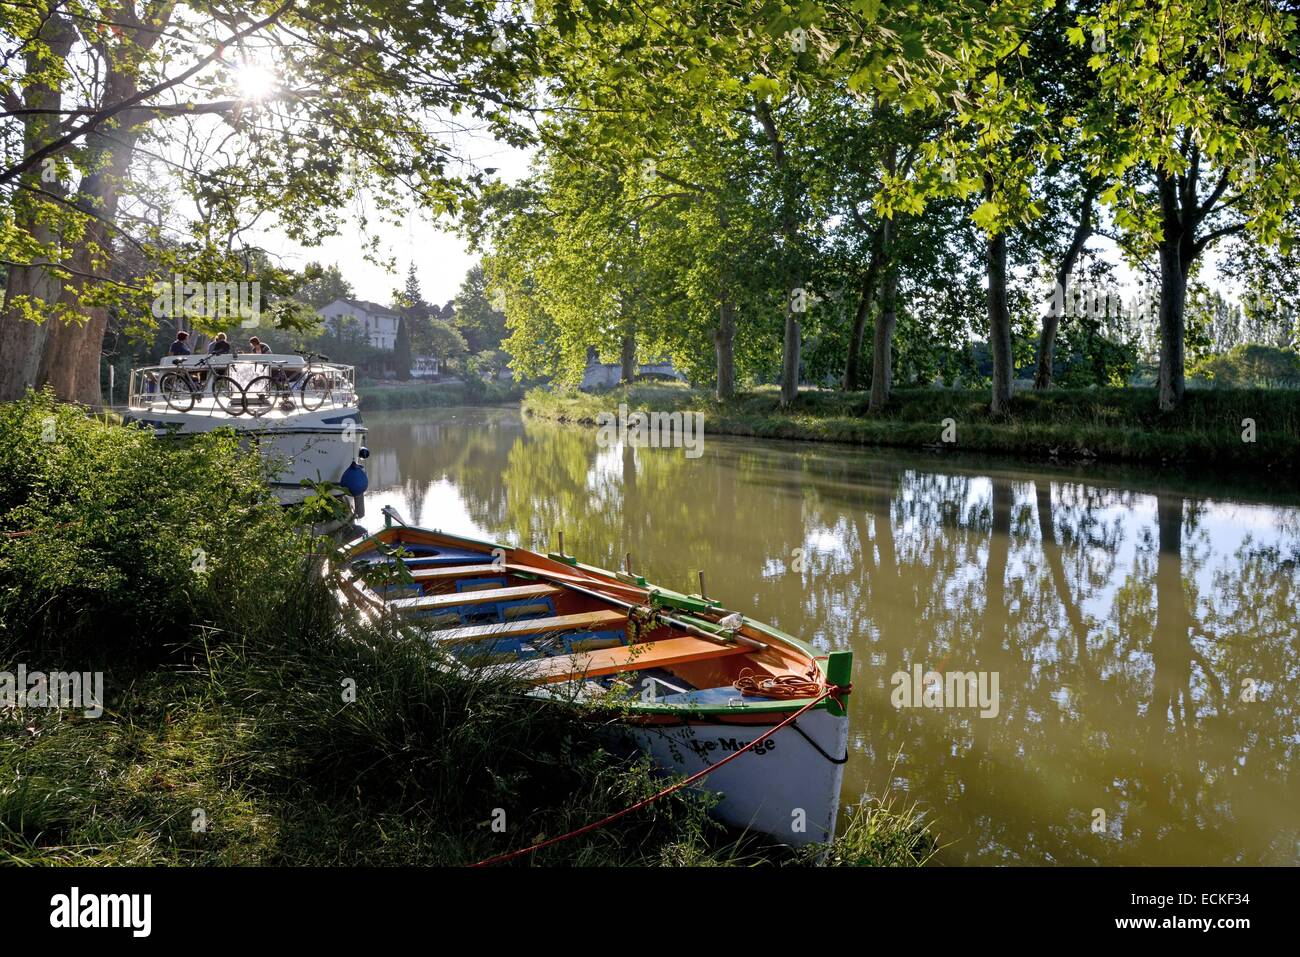 La France, l'Hérault, Narbonne, le Canal du Midi classé au Patrimoine Mondial de l'UNESCO, lieu dit La Croisade, traditionnel bateau amarré en bordure d'une voie avec des platanes Banque D'Images